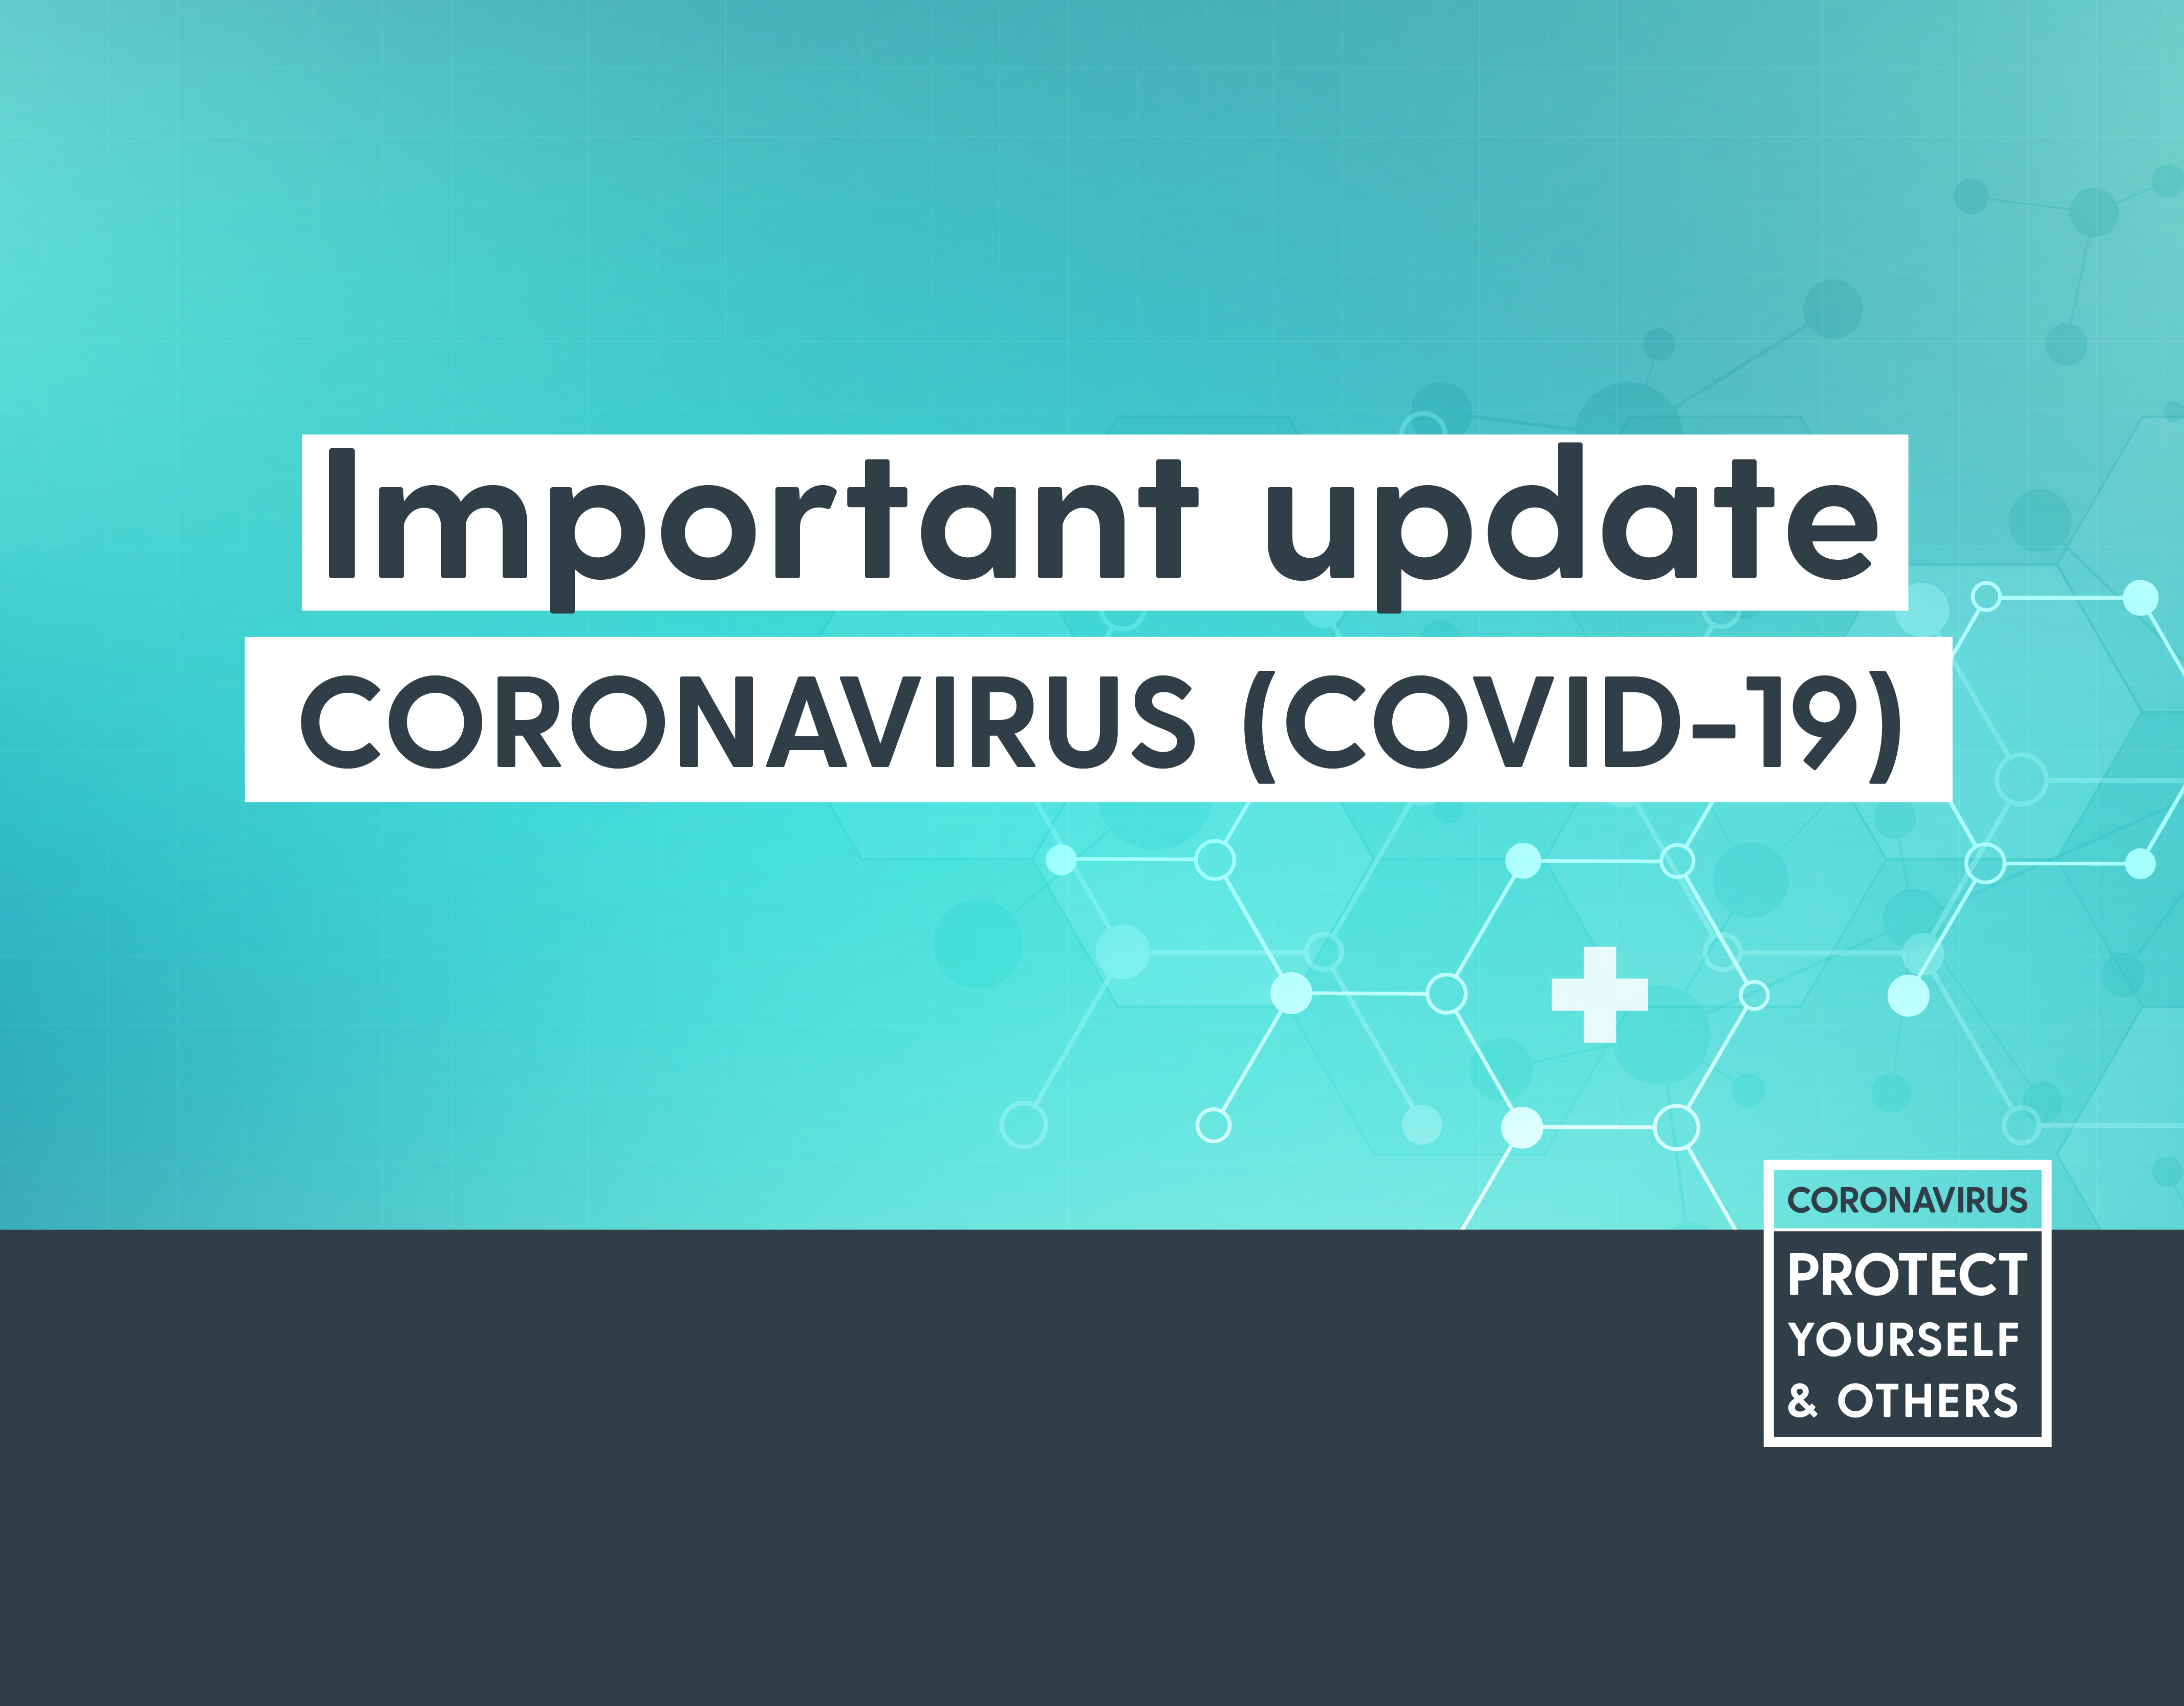 Covid-19 announcement box